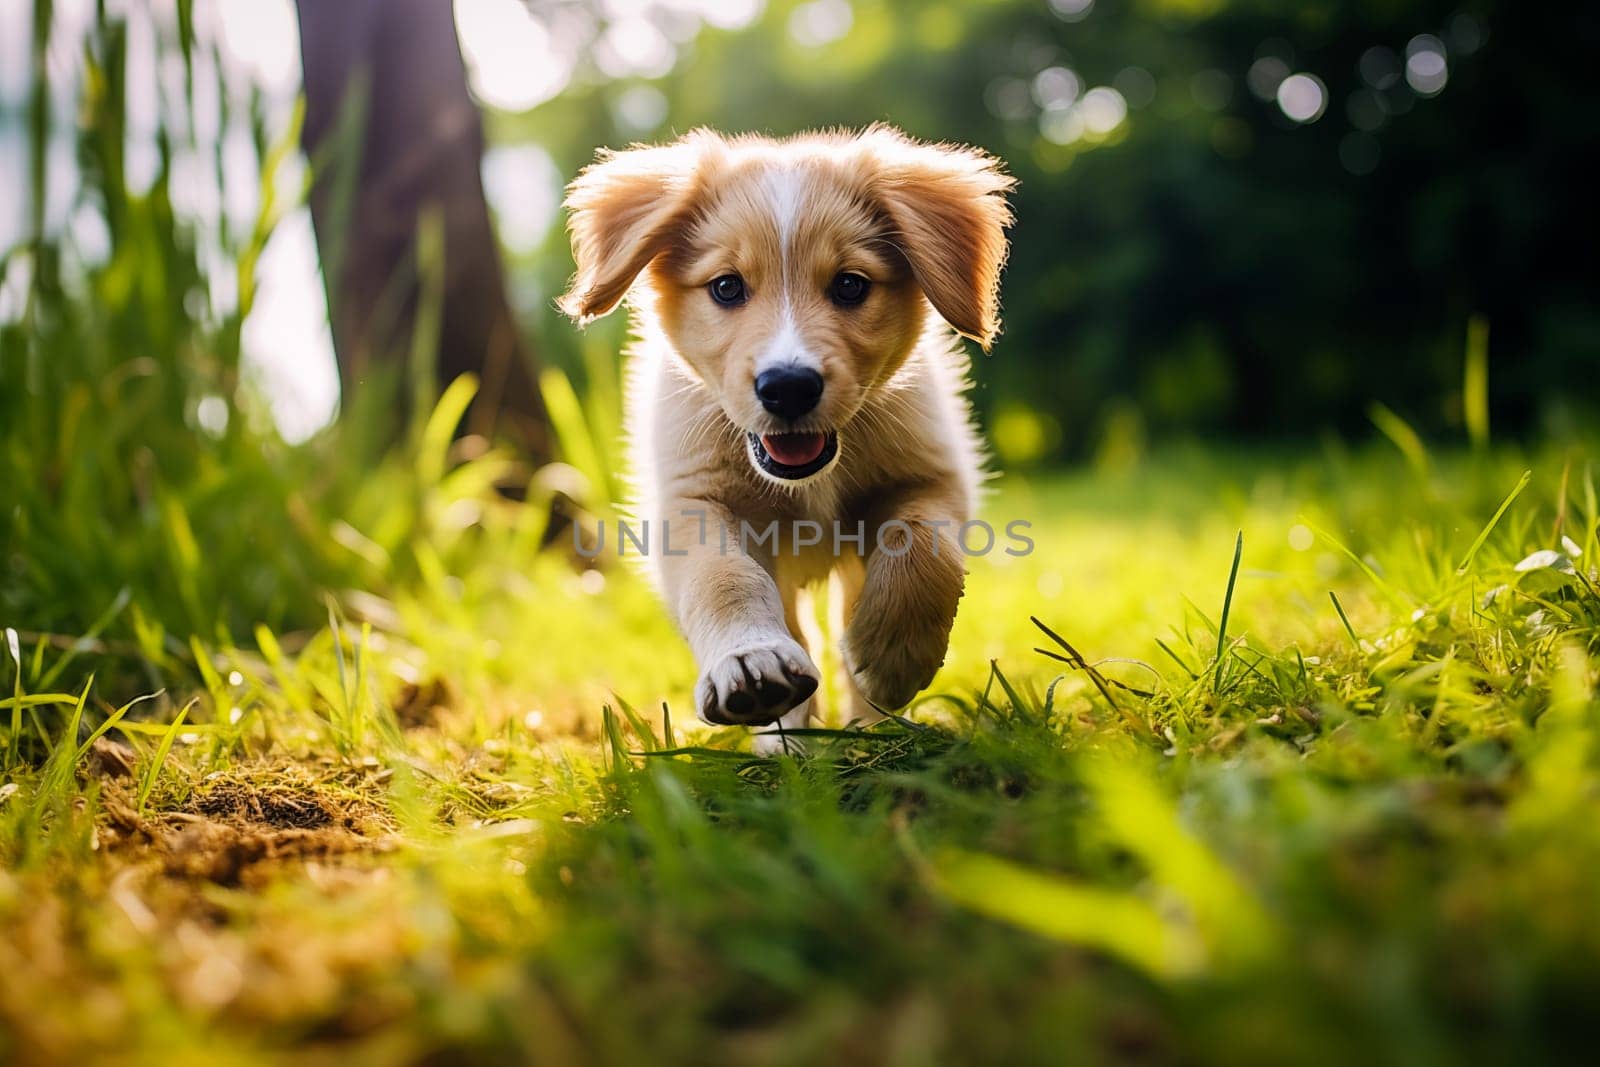 Cute puppy running joyfully on the green grass in a sunlit park